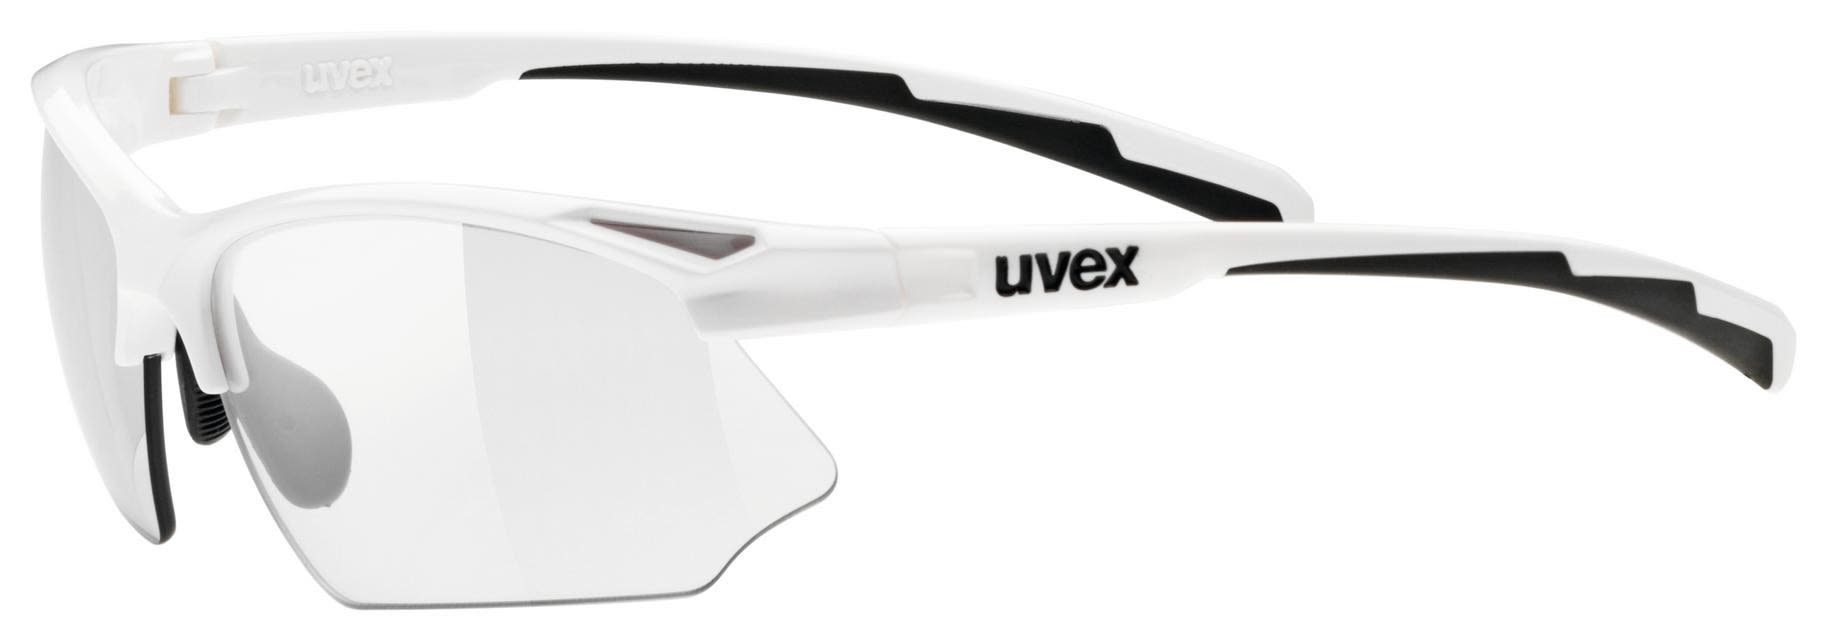 neu Uvex Sportbrille Uvex Sportstyle 802 Vario Smoke - Variomatic Cat. 1-3 Accessoires White